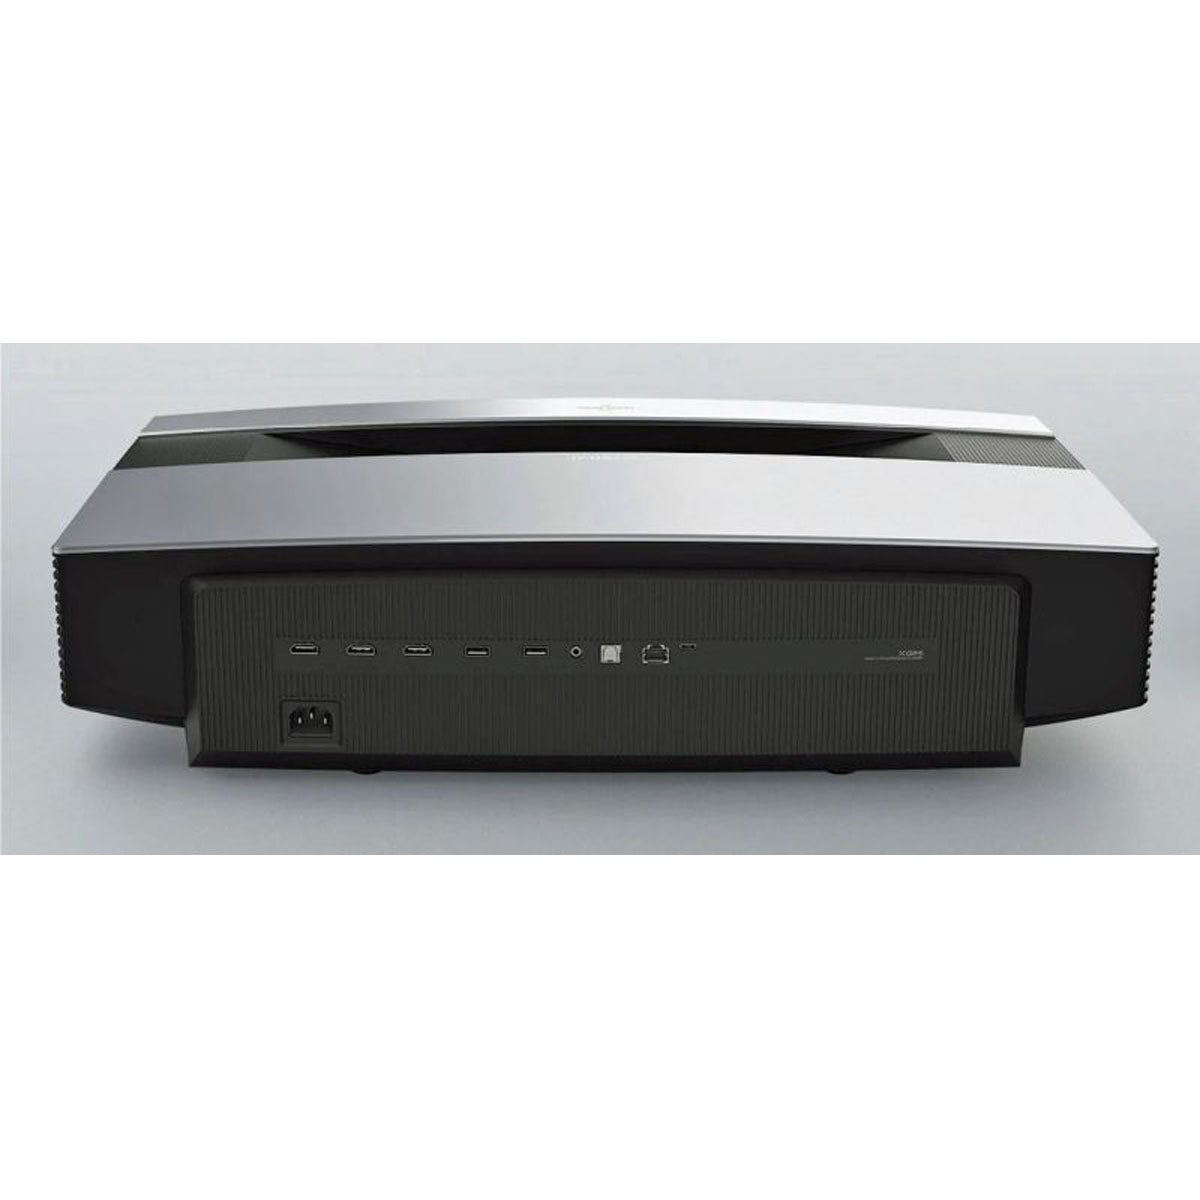 XGIMI Aura 4K LaserTV Projection TV 